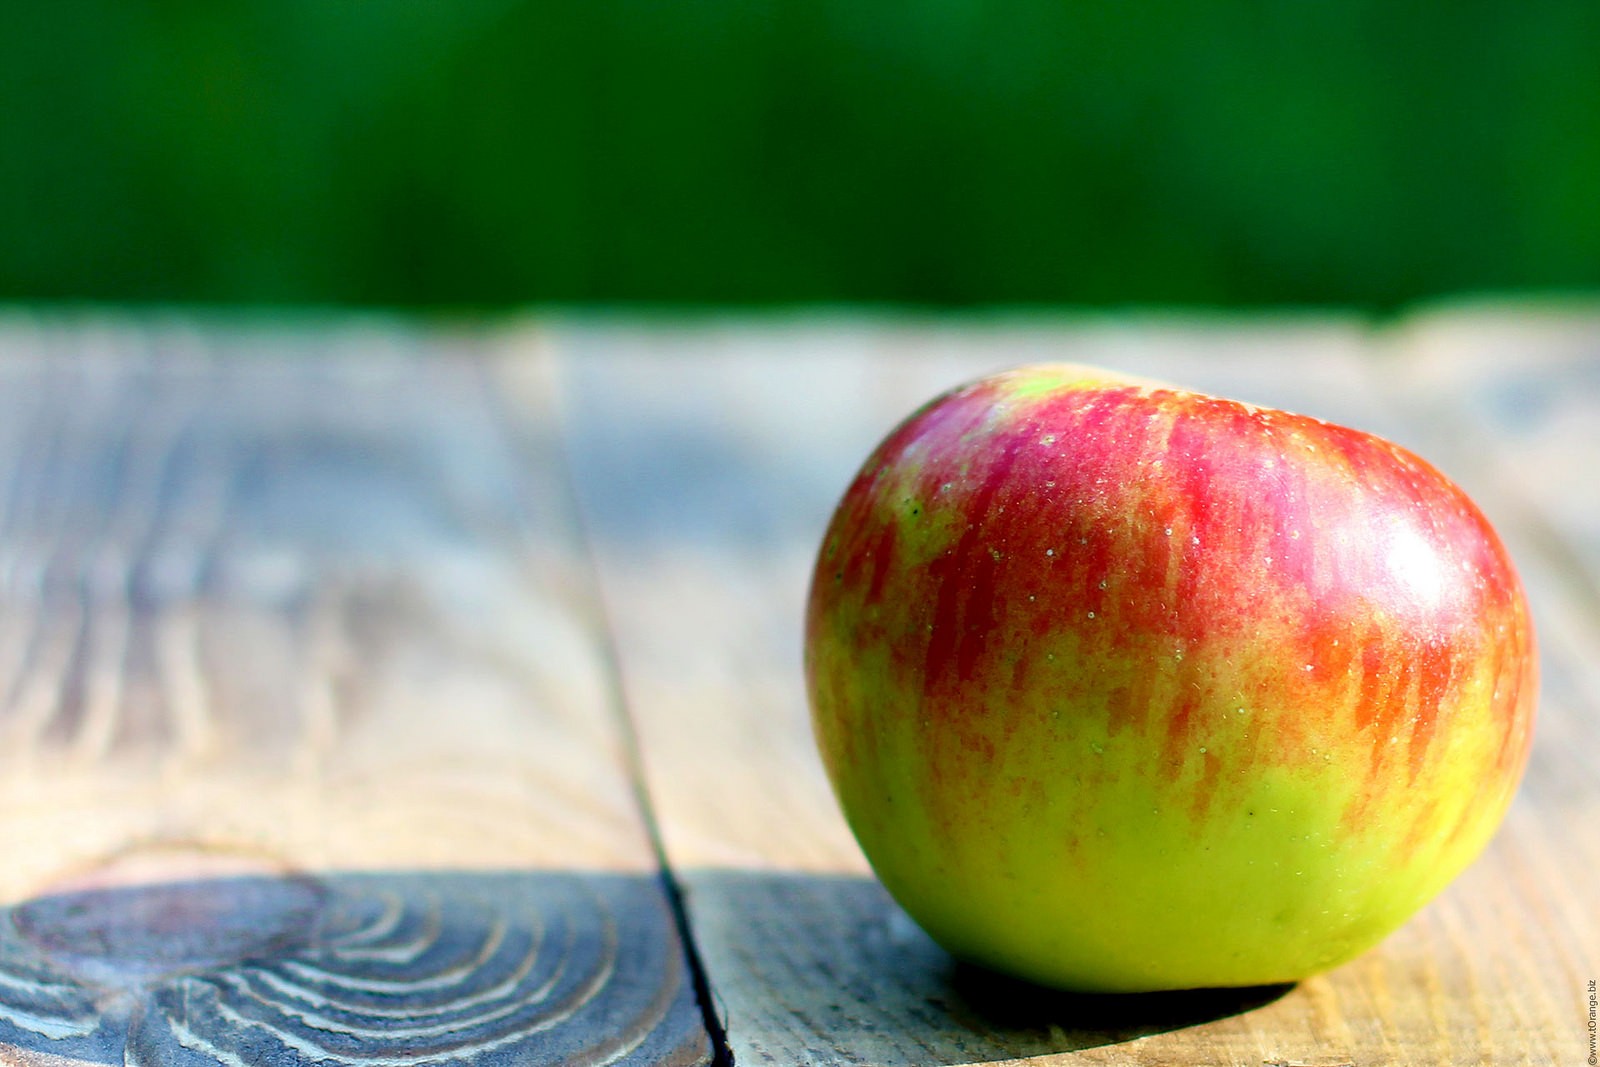 Hovorí sa, že jedno jablko denne pôsobí lepšie ako sto doktorov a niečo na tom bude. Jablká sú prospešné predovšetkým vďaka obsahu vlákniny a to rozpustnej aj nerozpustnej. Rozpustná vláknina pektín pomáha znižovať hladinu cholesterolu a tým znižuje riziko srdcových chorôb. Nerozpustná vláknina v jablkách potom pomáha udržiavať zdravé trávenie. David Grotto radí jablká nezbavovať šupky, ale konzumovať ich aj s ňou, keďže väčšina vlákniny a mnoho antioxidantov sa nachádza práve v šupke tohto ovocia.